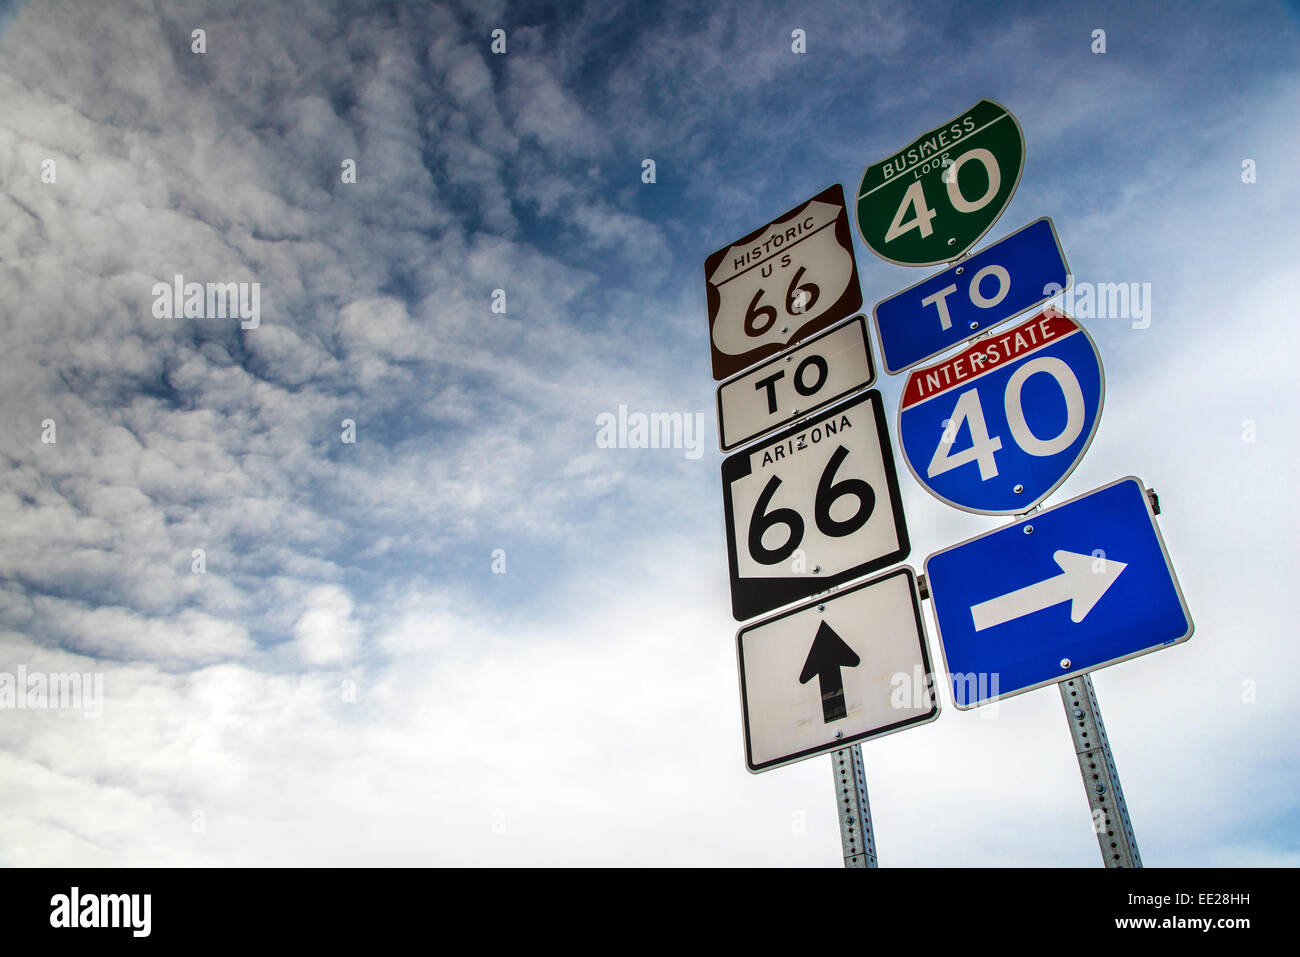 U.S. Route 66 et l'Interstate 40, la signalisation routière verticale, Arizona, USA Banque D'Images